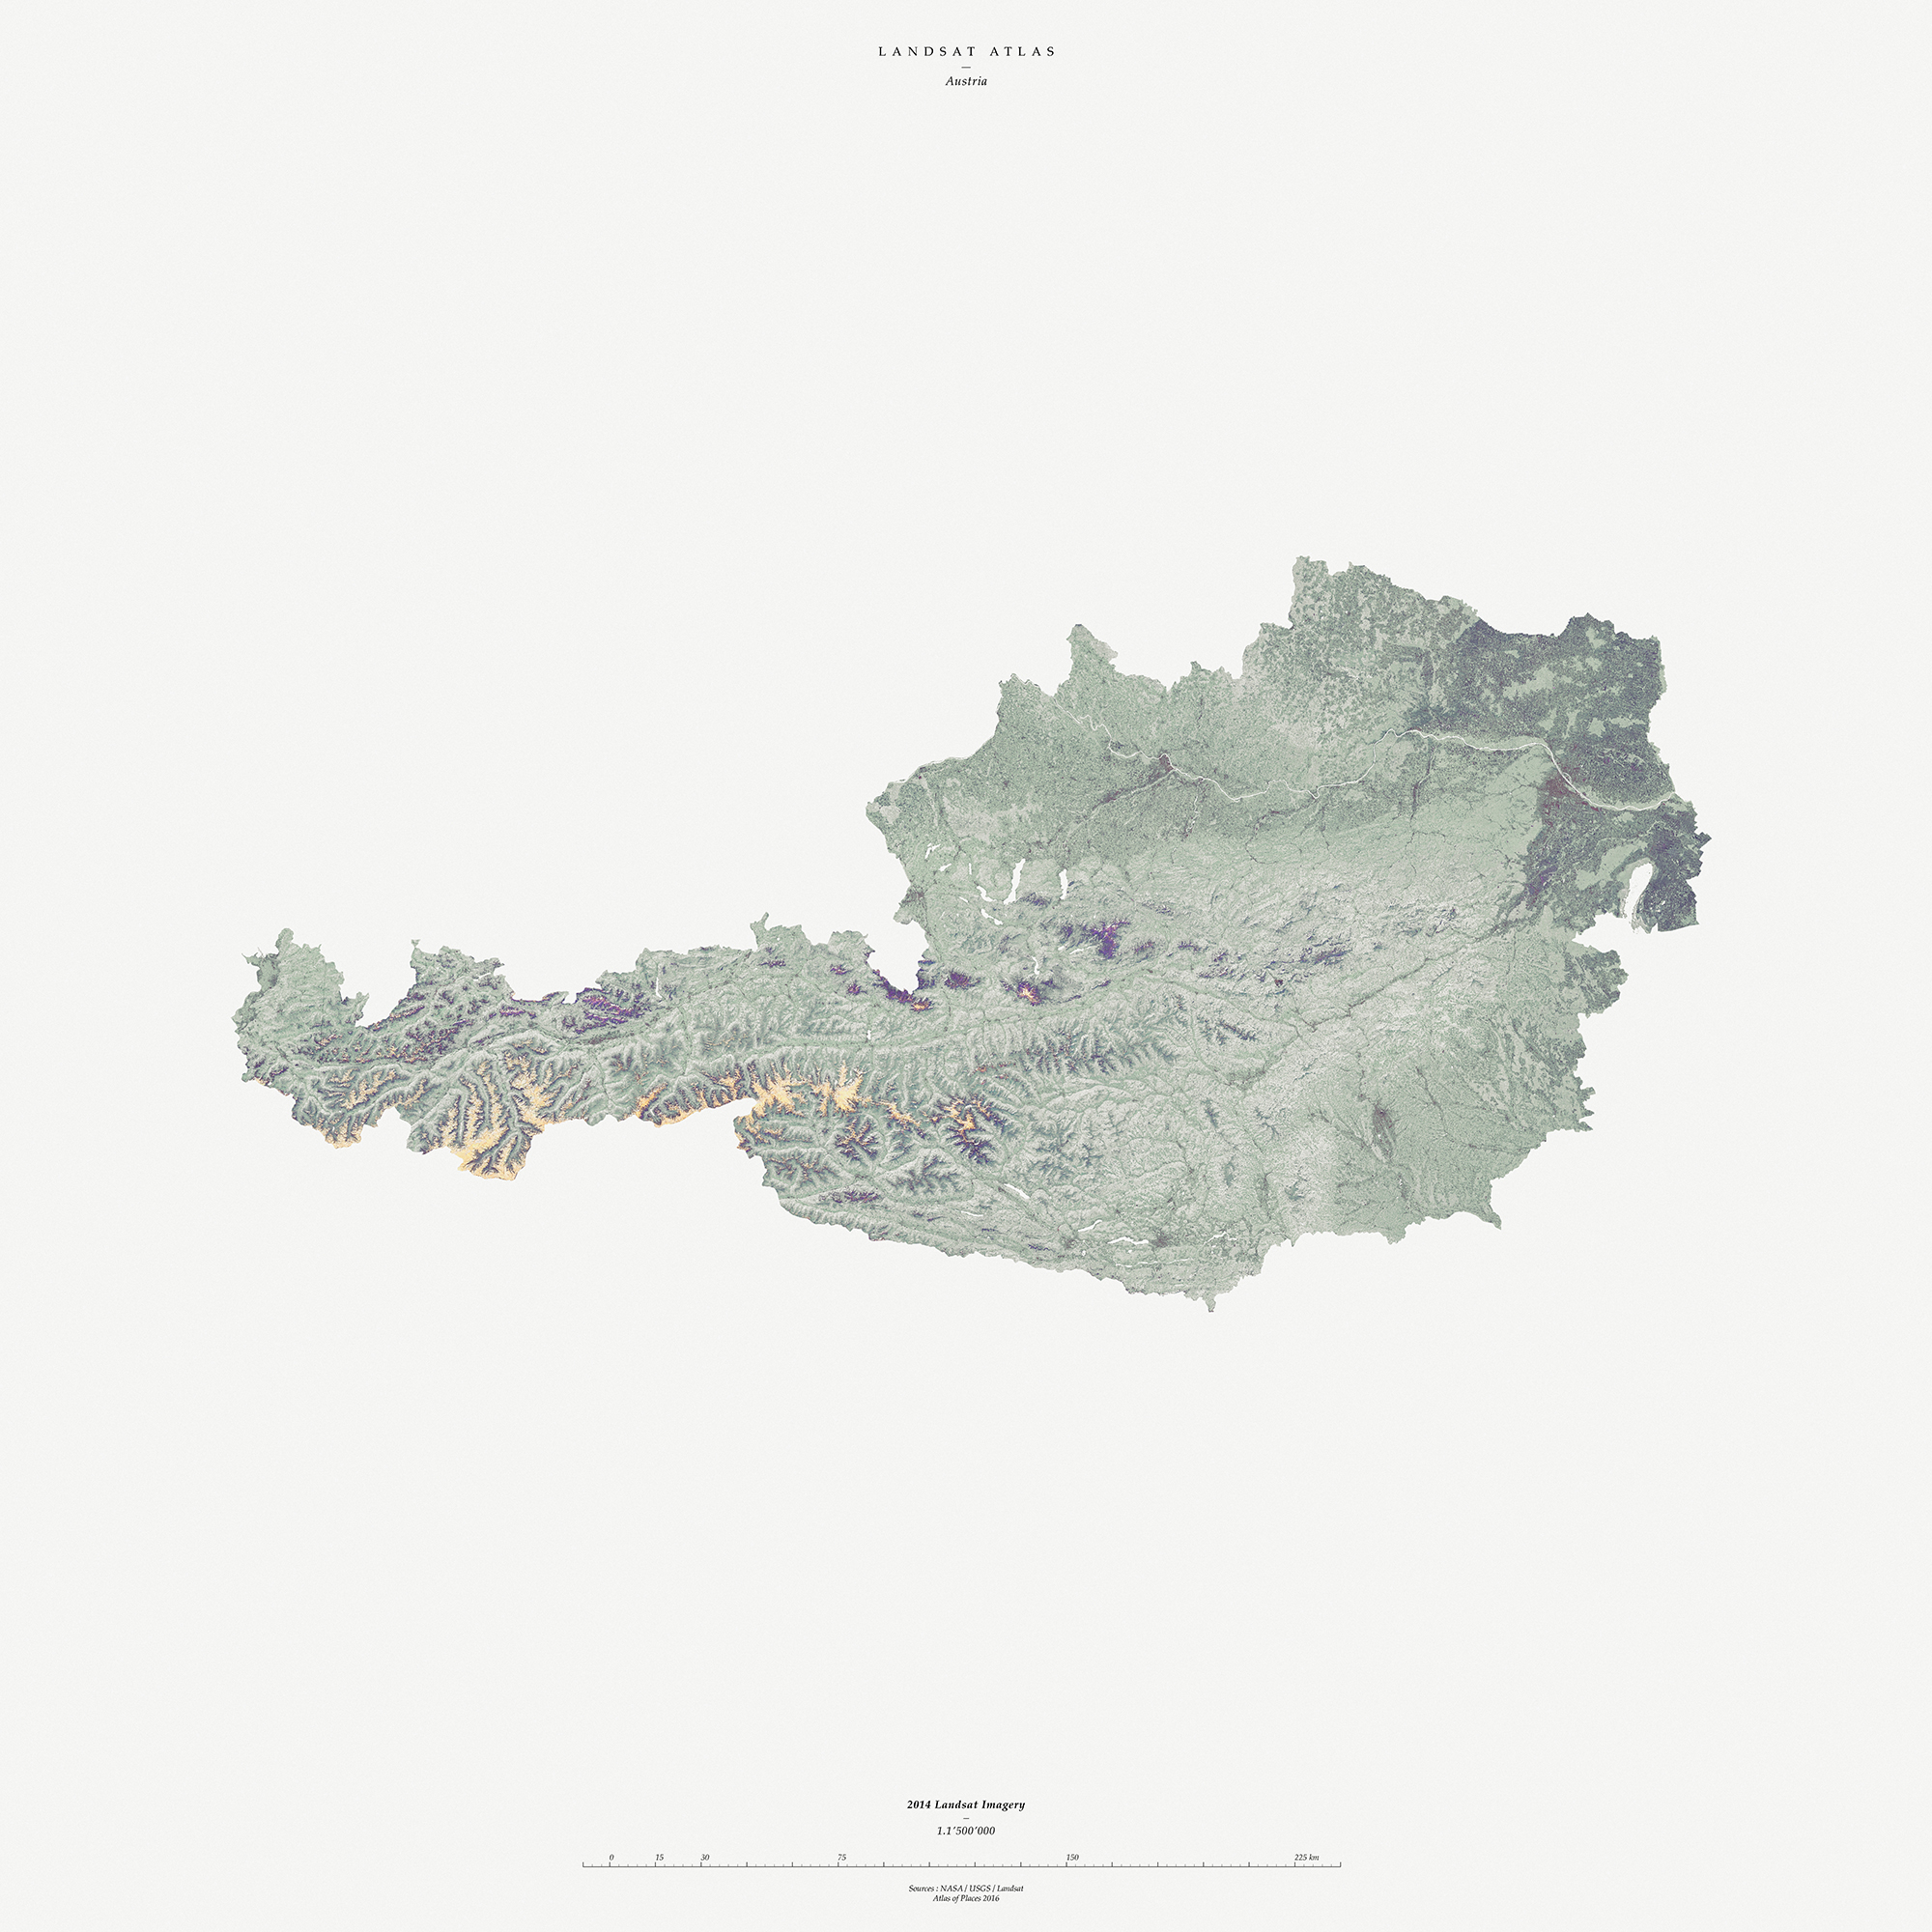 Atlas of Landsat I